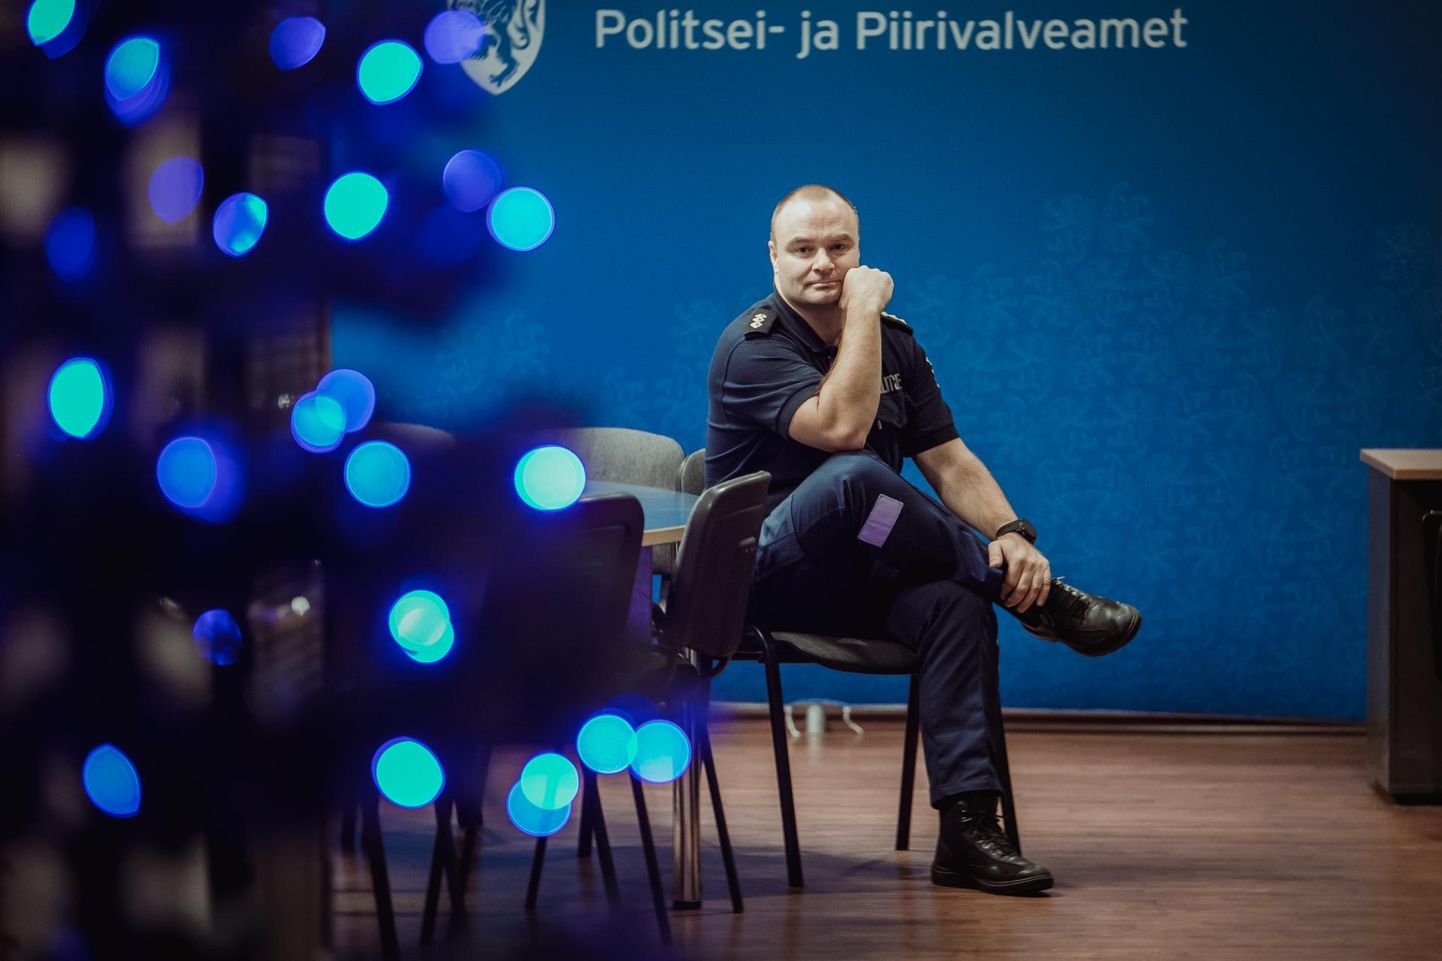 Pärnu politseijaoskonna ennetus- ja menetlustalituse juhi Üllar Küti hinnangul on uuest aastast kehtima hakkav lühimenetlus kõikidele osapooltele positiivne.